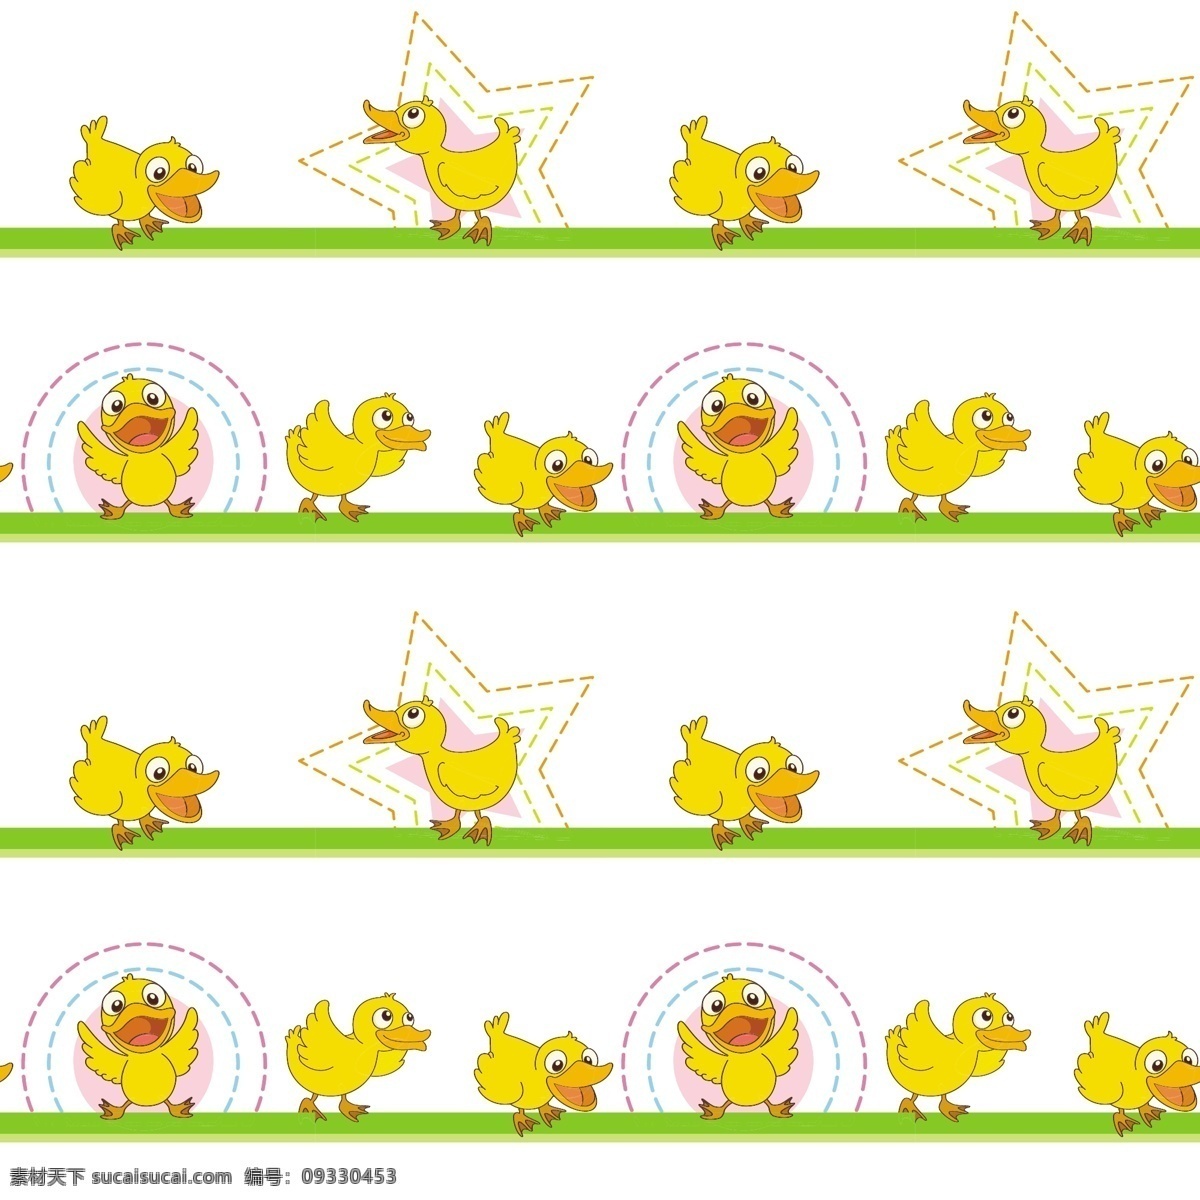 各种 黄色 小 鸭子 插图 图案 插图图案 可爱 模板下载 卡通 眼镜 小鸭子 小黄鸭